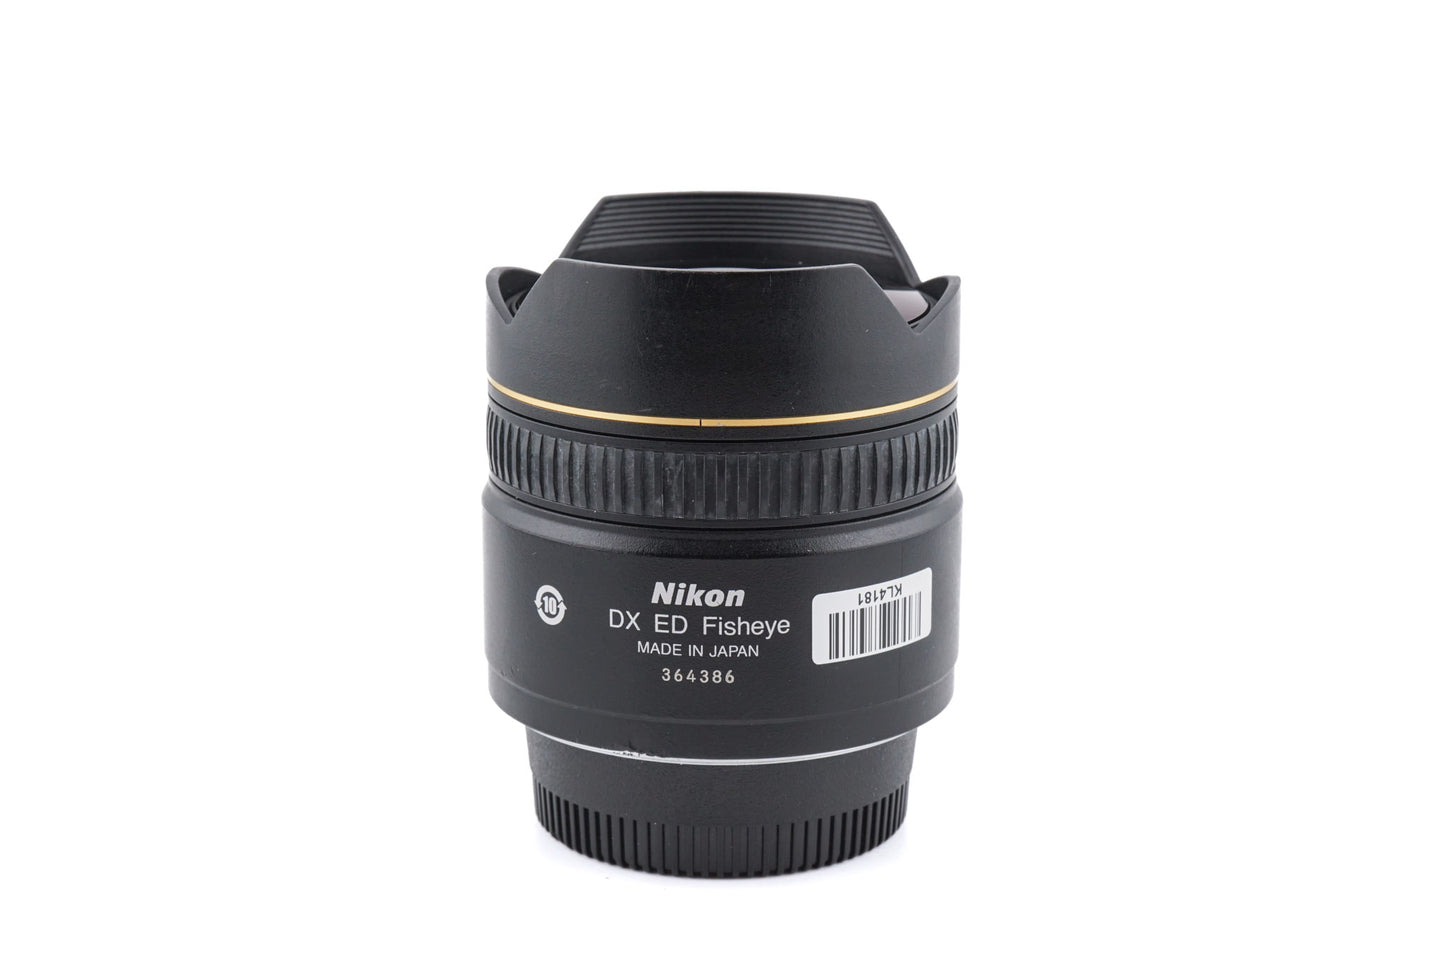 Nikon 10.5mm f2.8 AF Fisheye Nikkor G ED DX